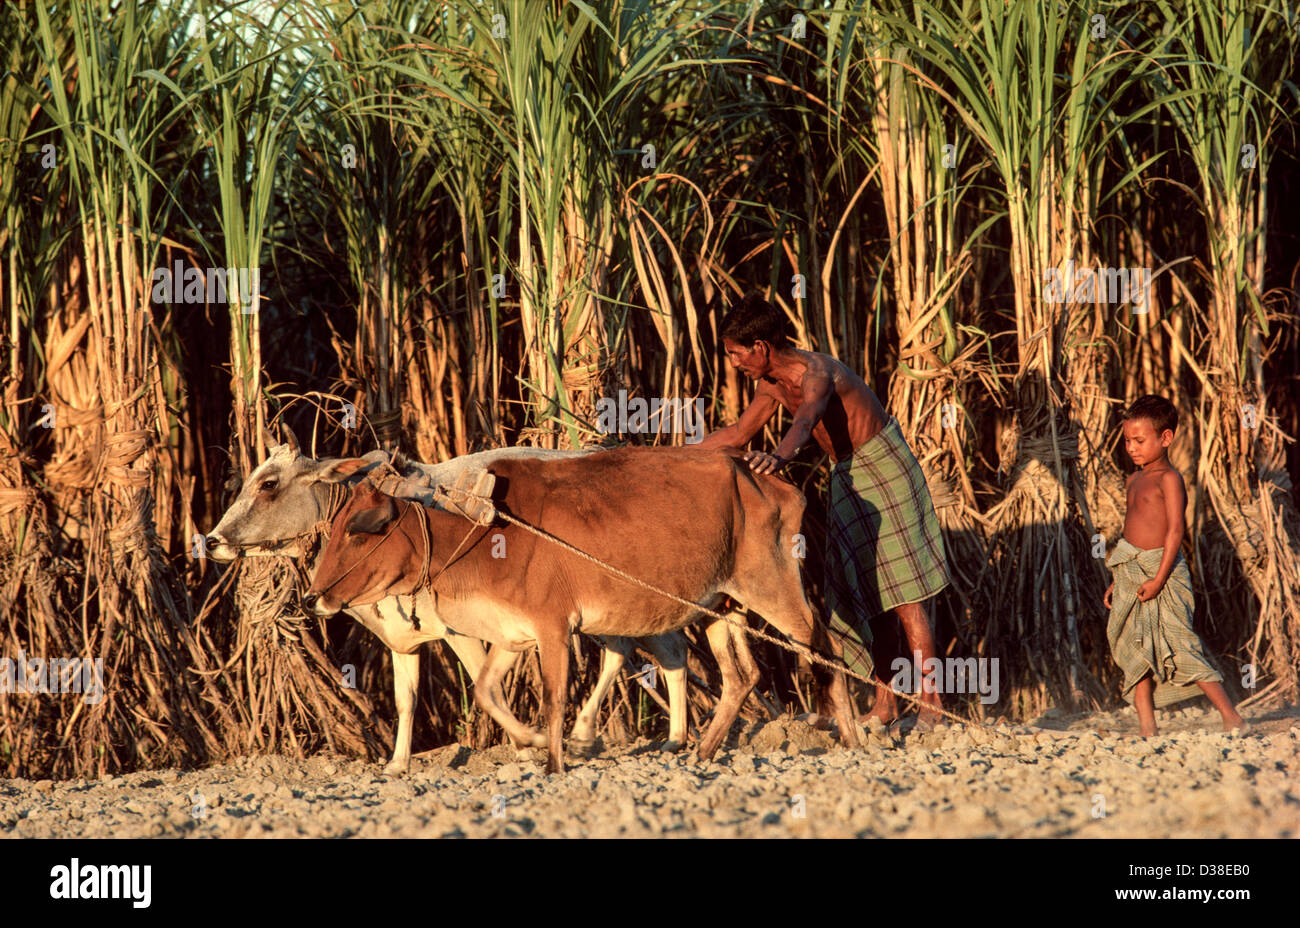 Le hersage agriculteur un champ en se tenant debout sur une planche plate tiré par 2 bœufs après la récolte de la canne à sucre. Tangail, Bangladesh Banque D'Images